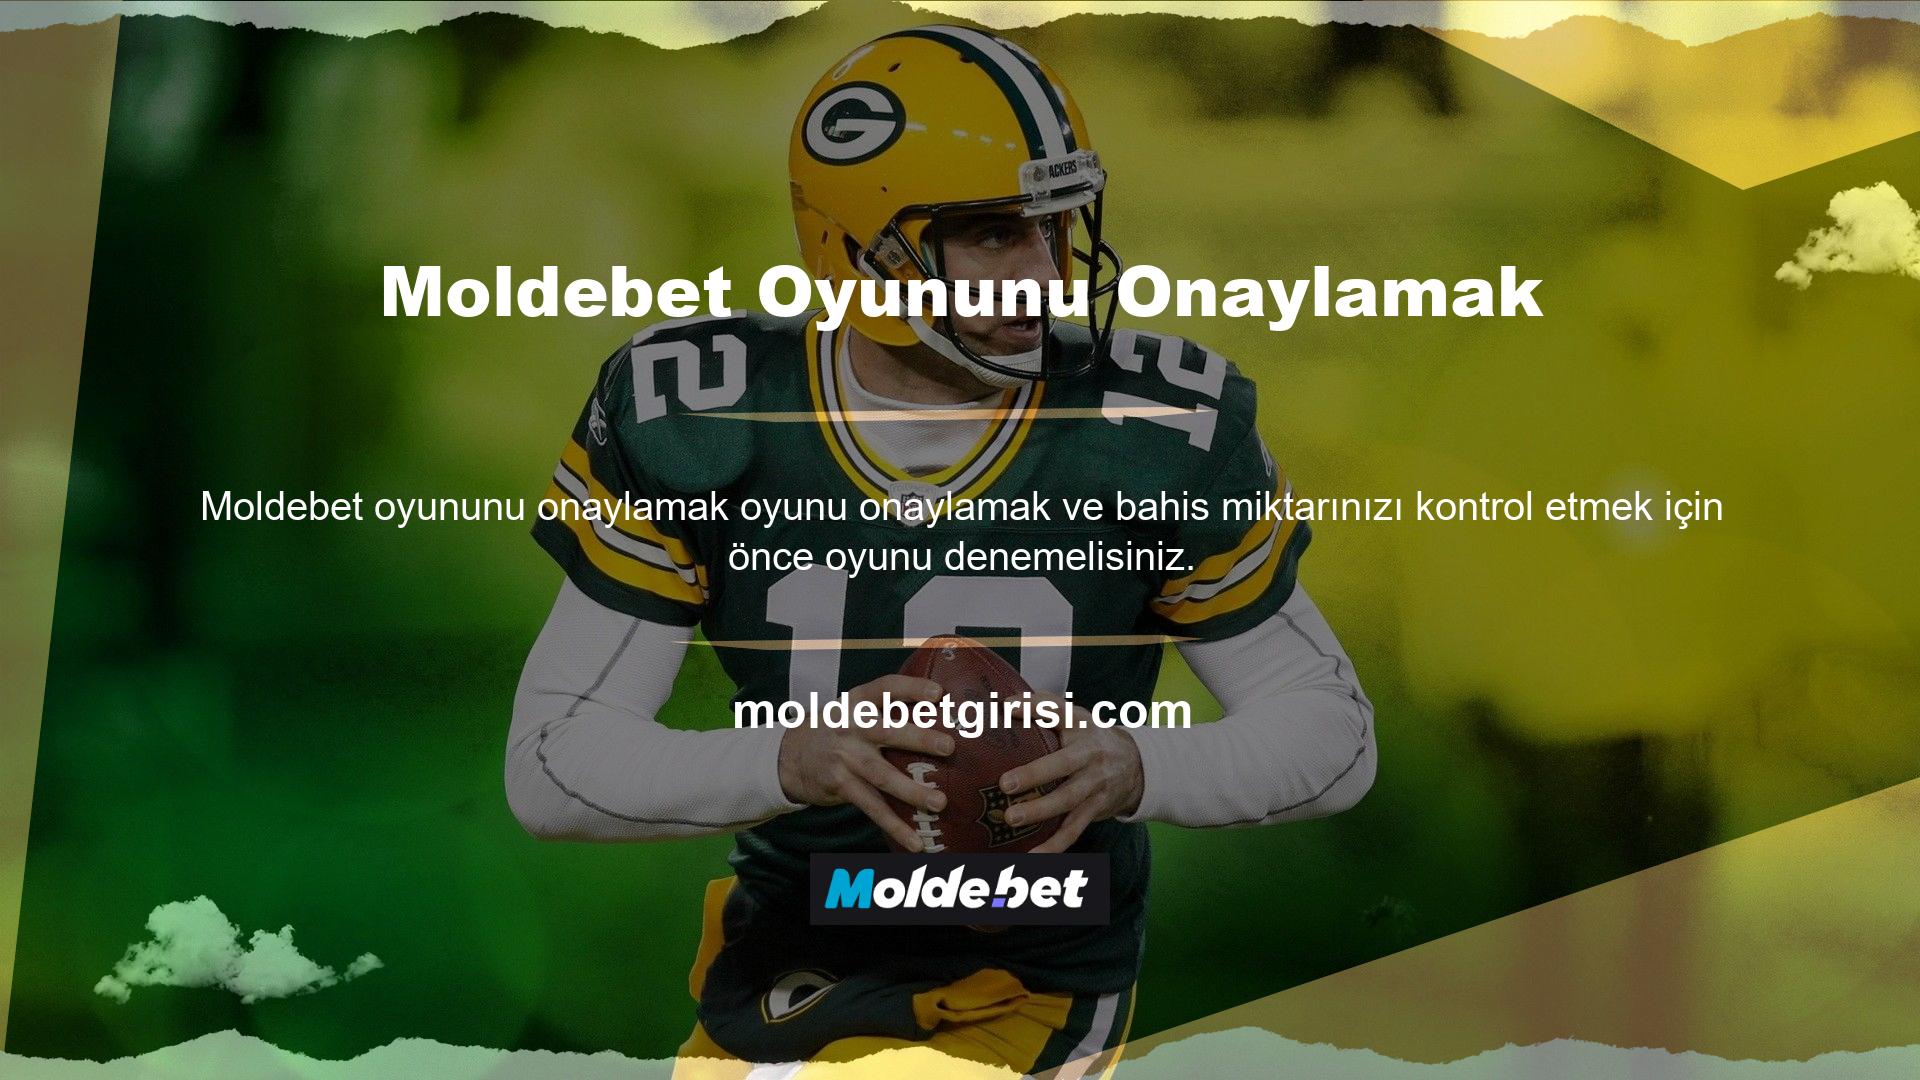 Moldebet, çeşitli oyun ve bahis seçeneklerinin yanı sıra dil ayarlarında da Türkçe seçeneği sunmaktadır